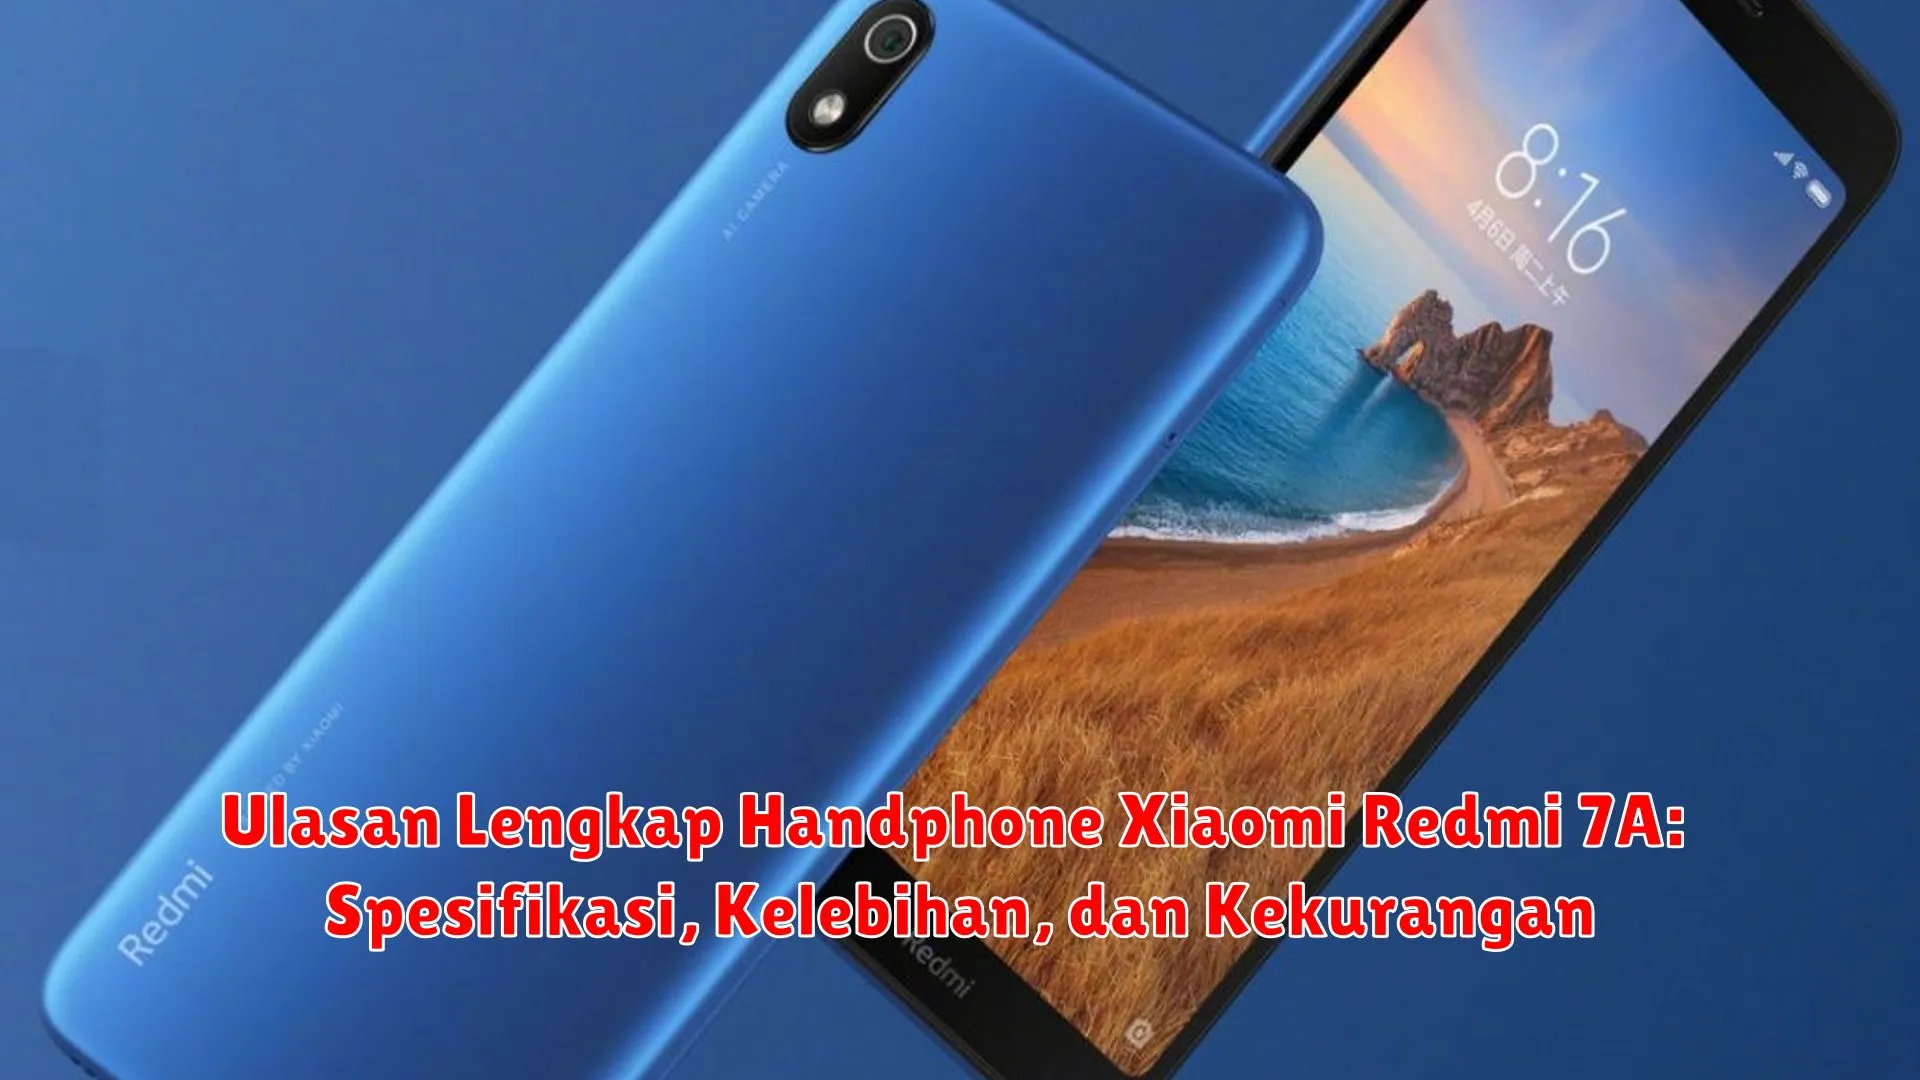 Ulasan Lengkap Handphone Xiaomi Redmi 7A: Spesifikasi, Kelebihan, dan Kekurangan